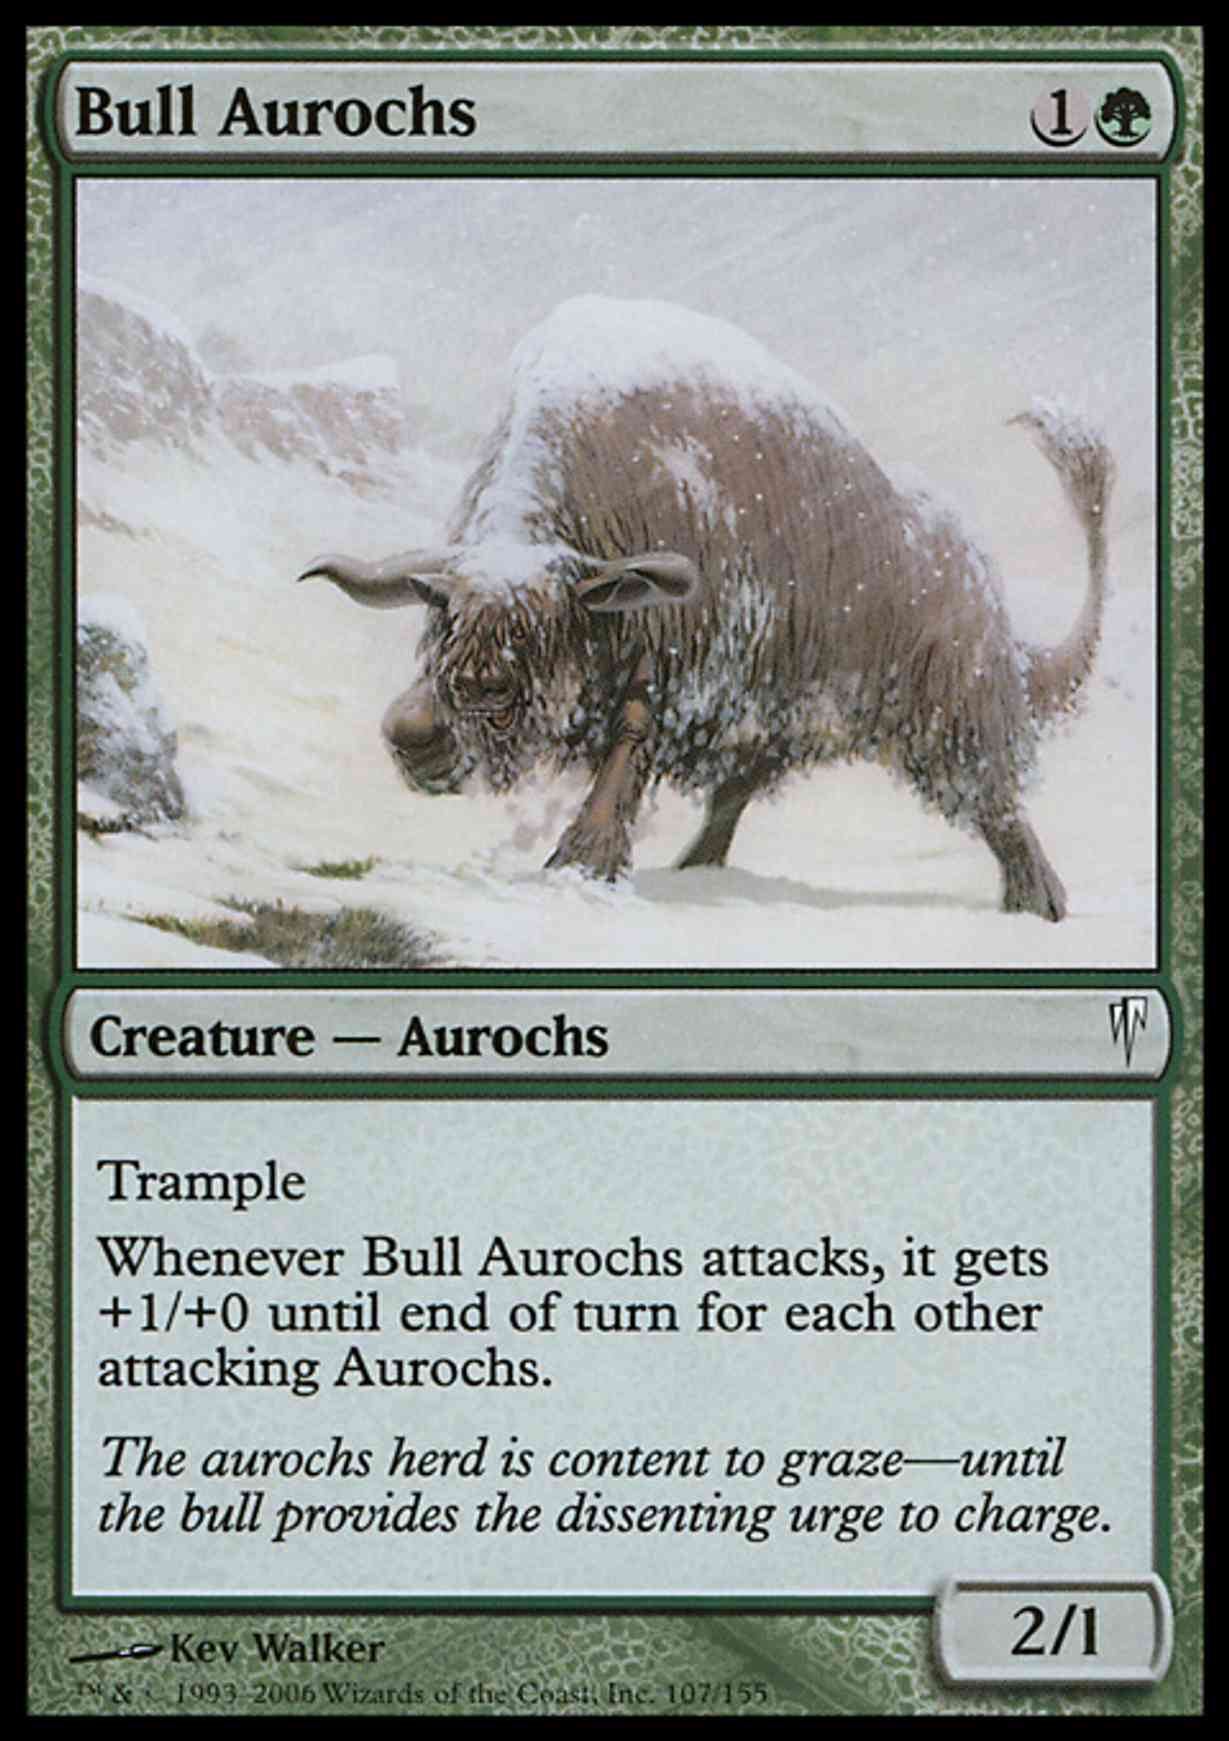 Bull Aurochs magic card front